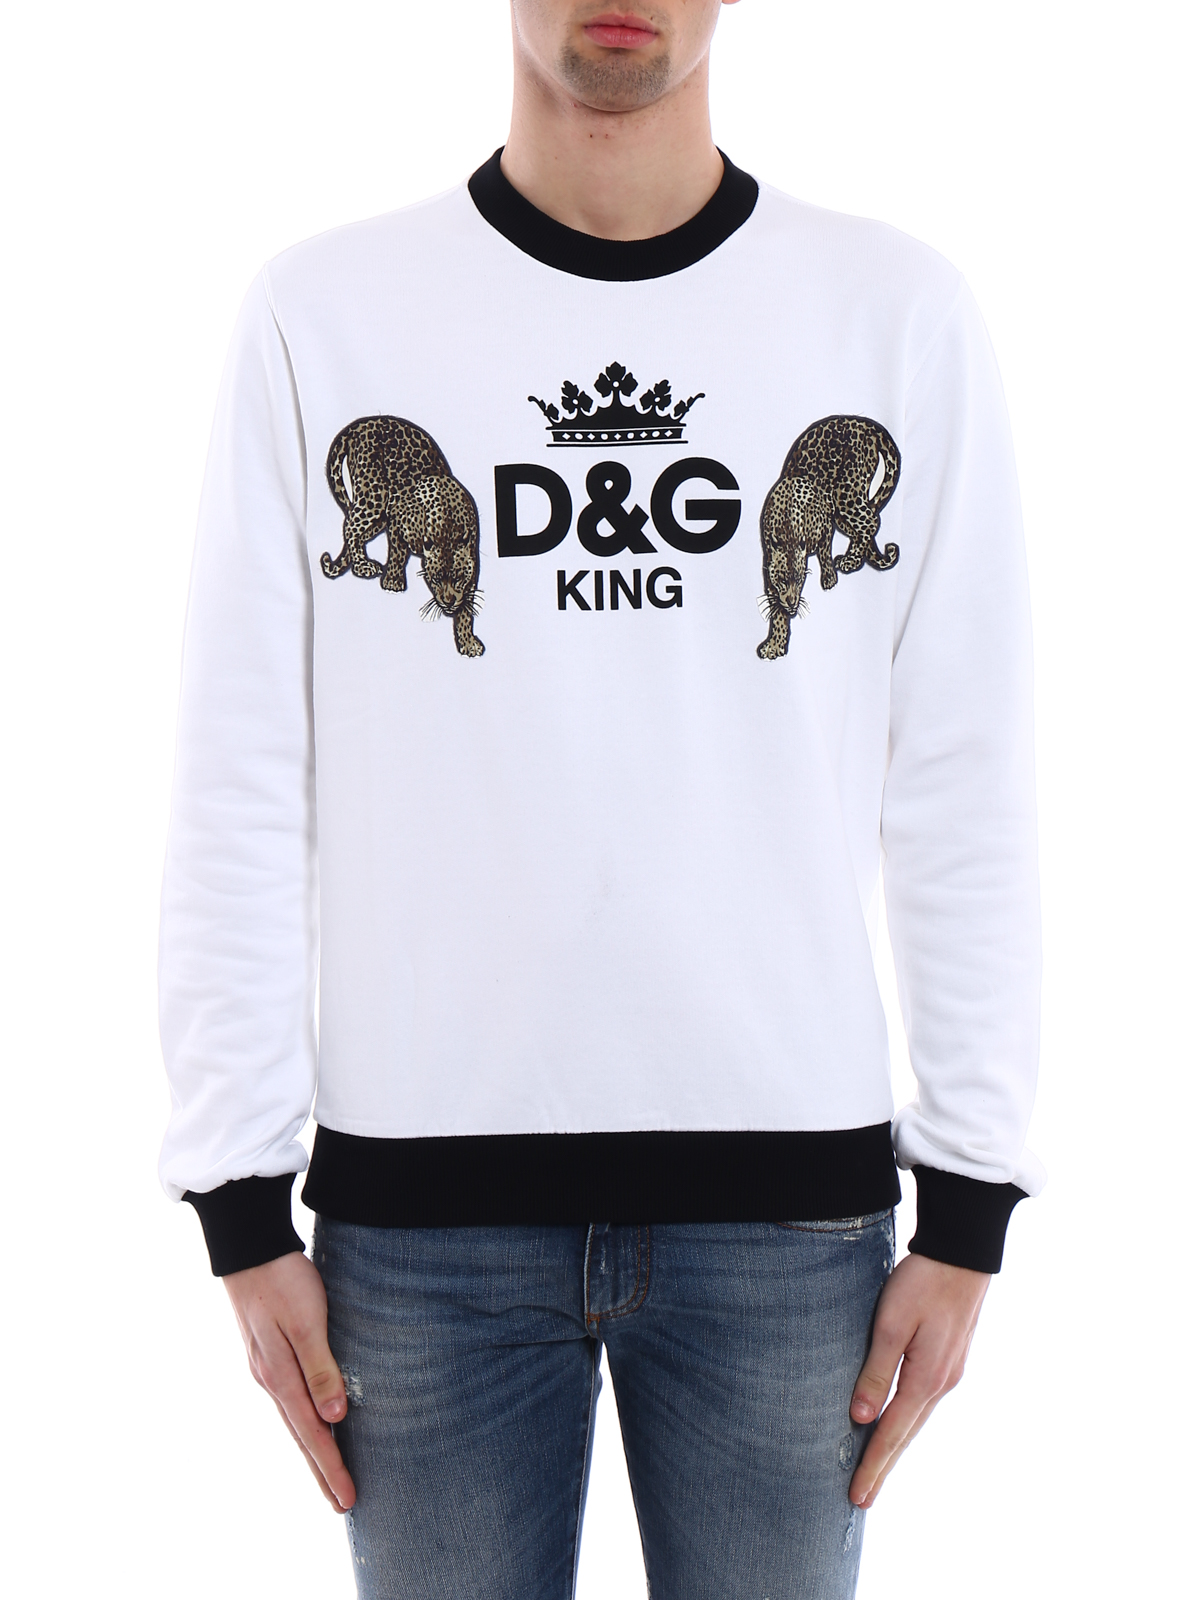 d & g king